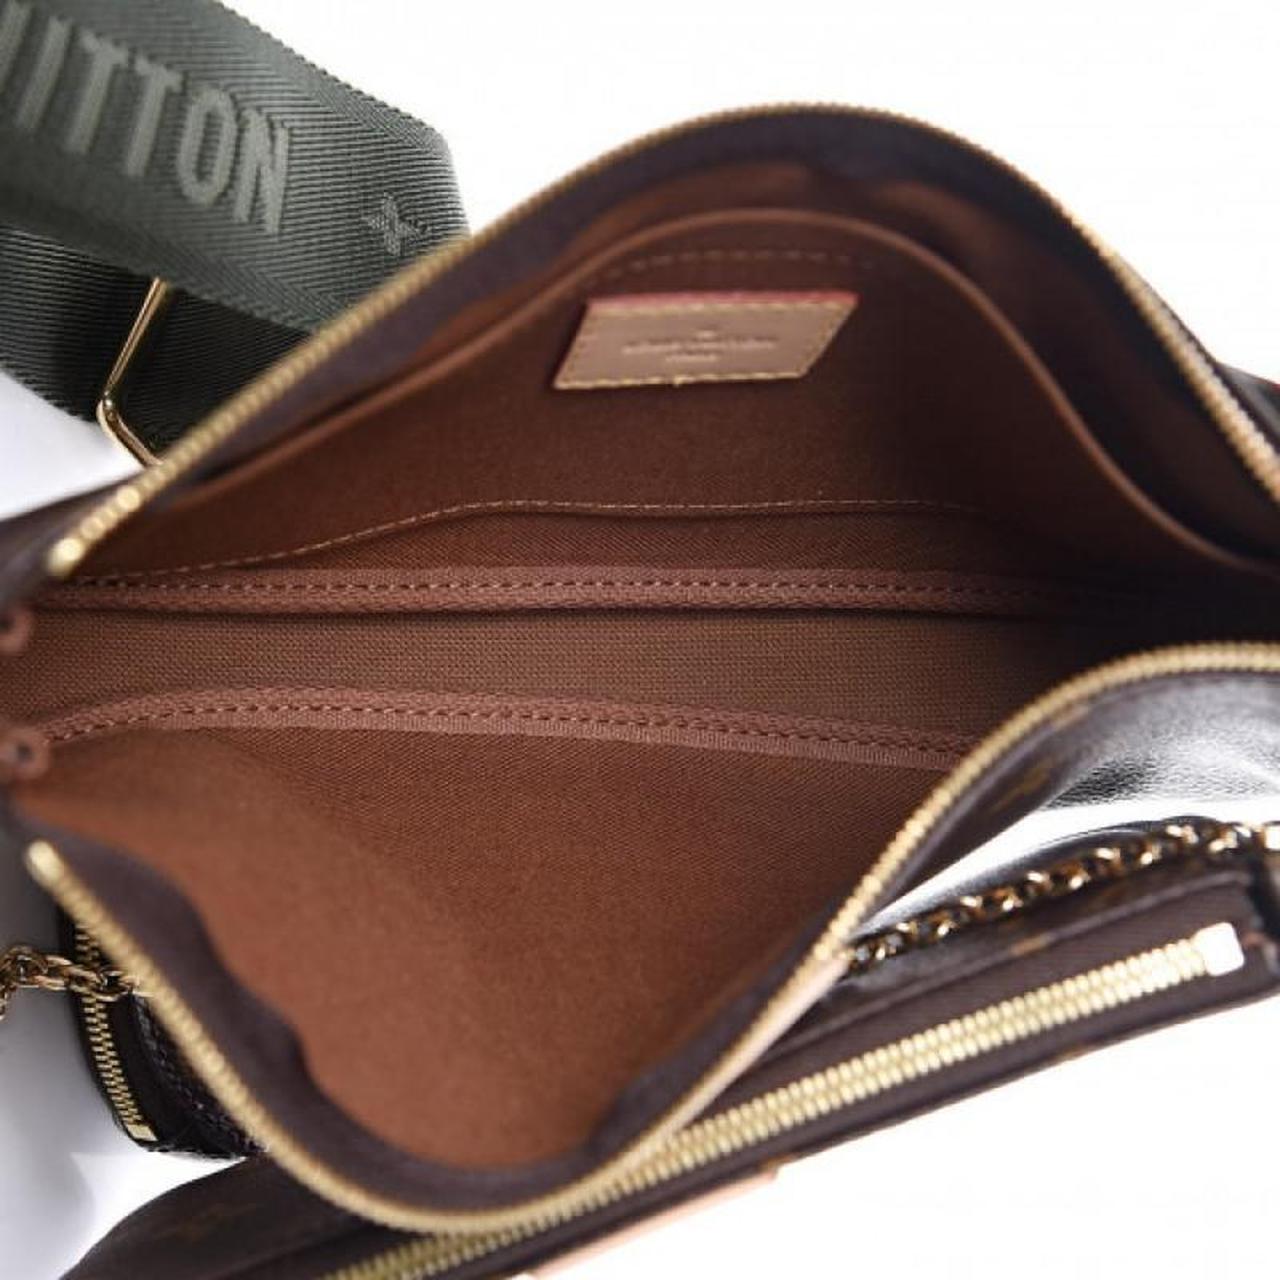 Louis Vuitton carrier bag. Have multiple!! - Depop